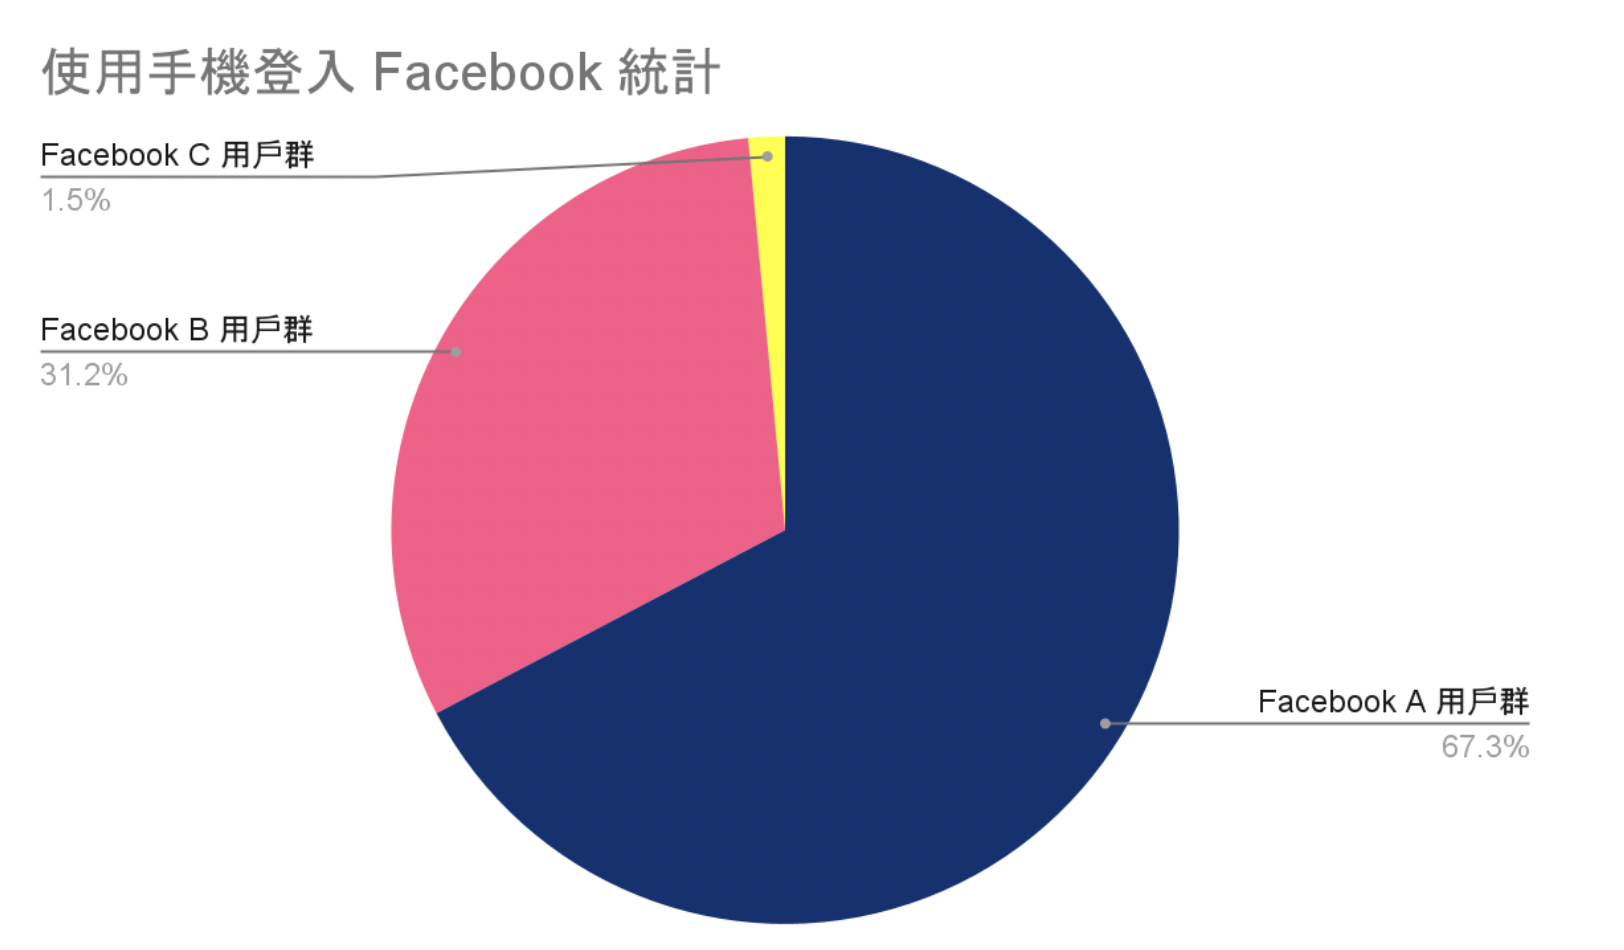 圖二、有超過 67.3% 的用戶只會使用手機登入 Facebook